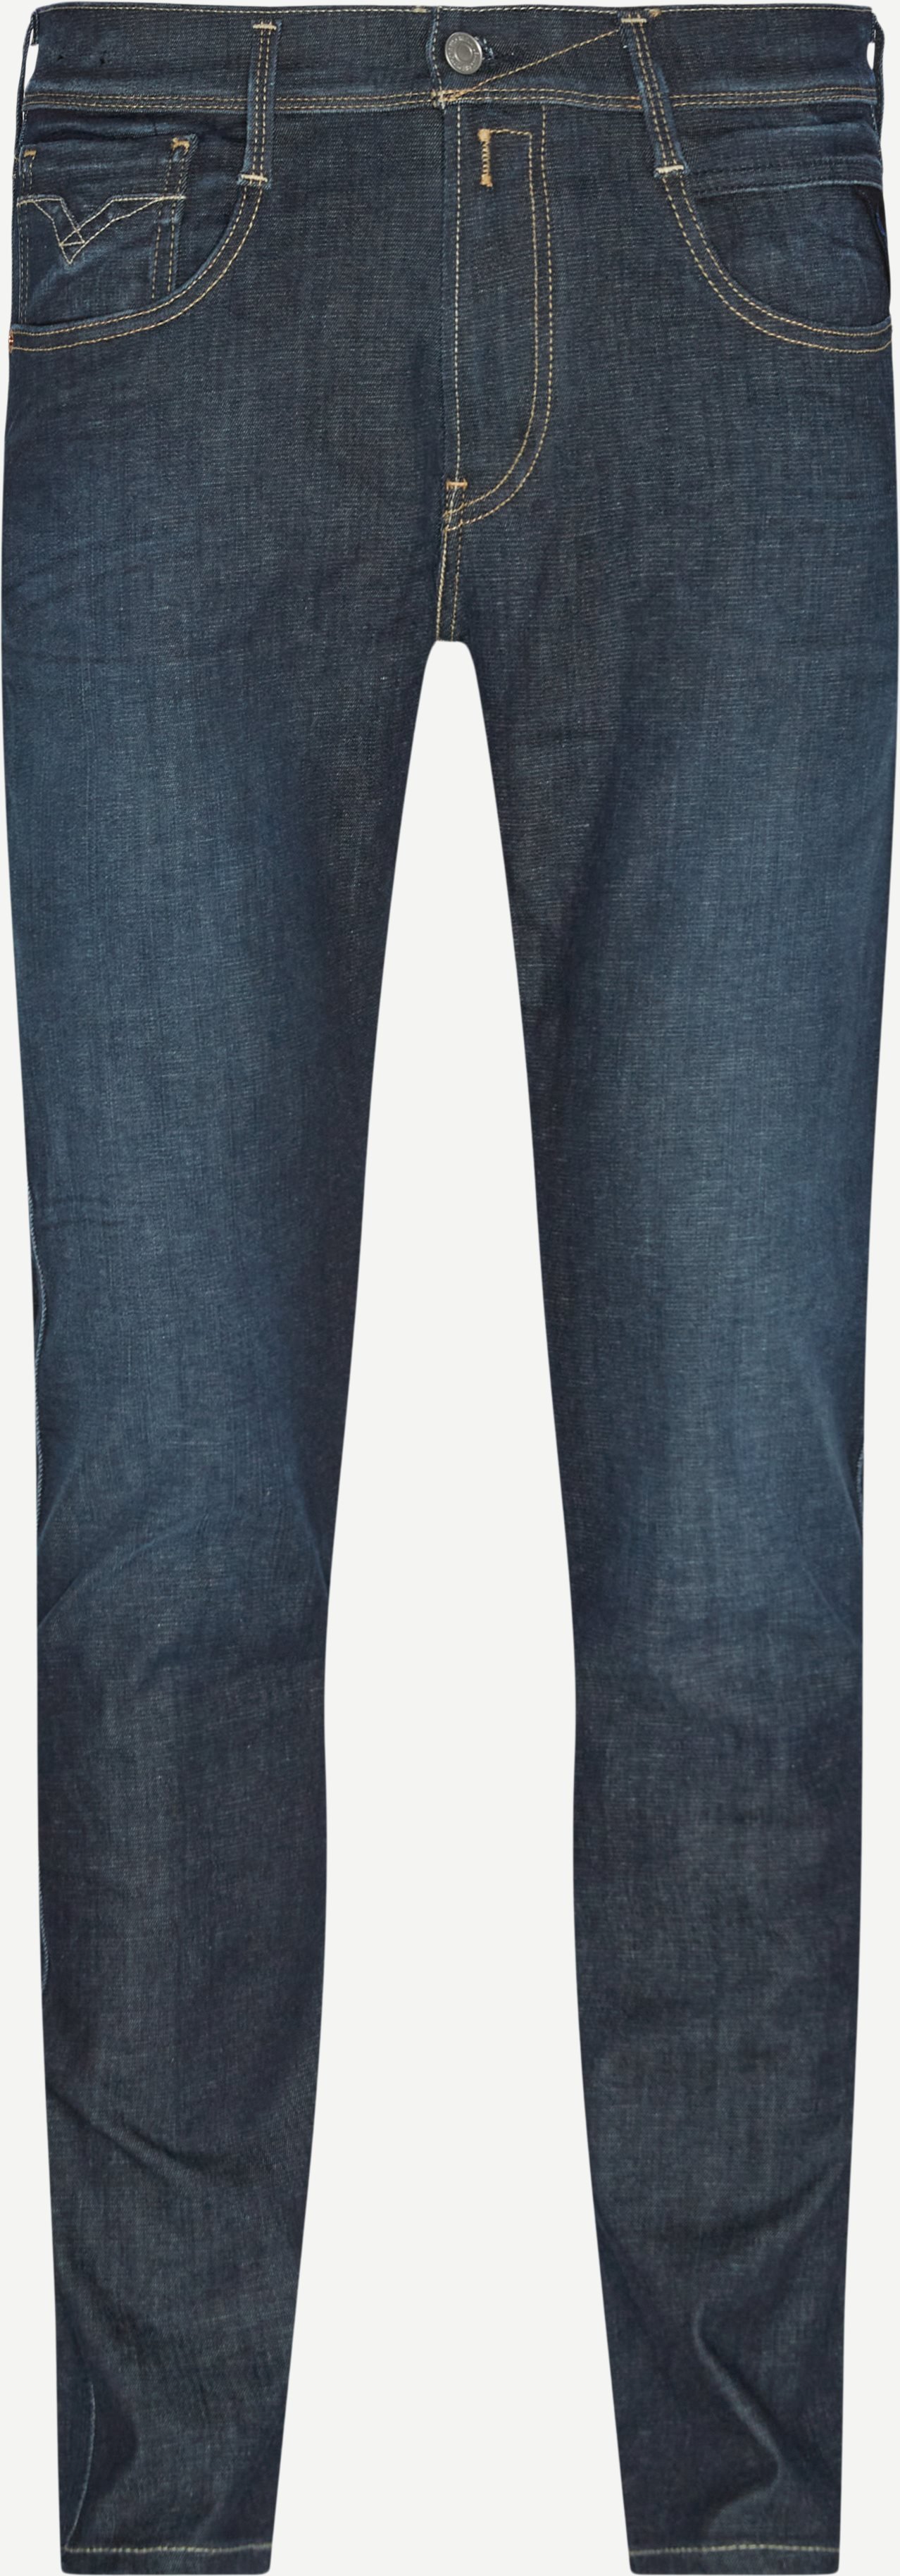 661 RI10 Anbass Hyperflex-Jeans - Jeans - Slim fit - Jeans-Blau